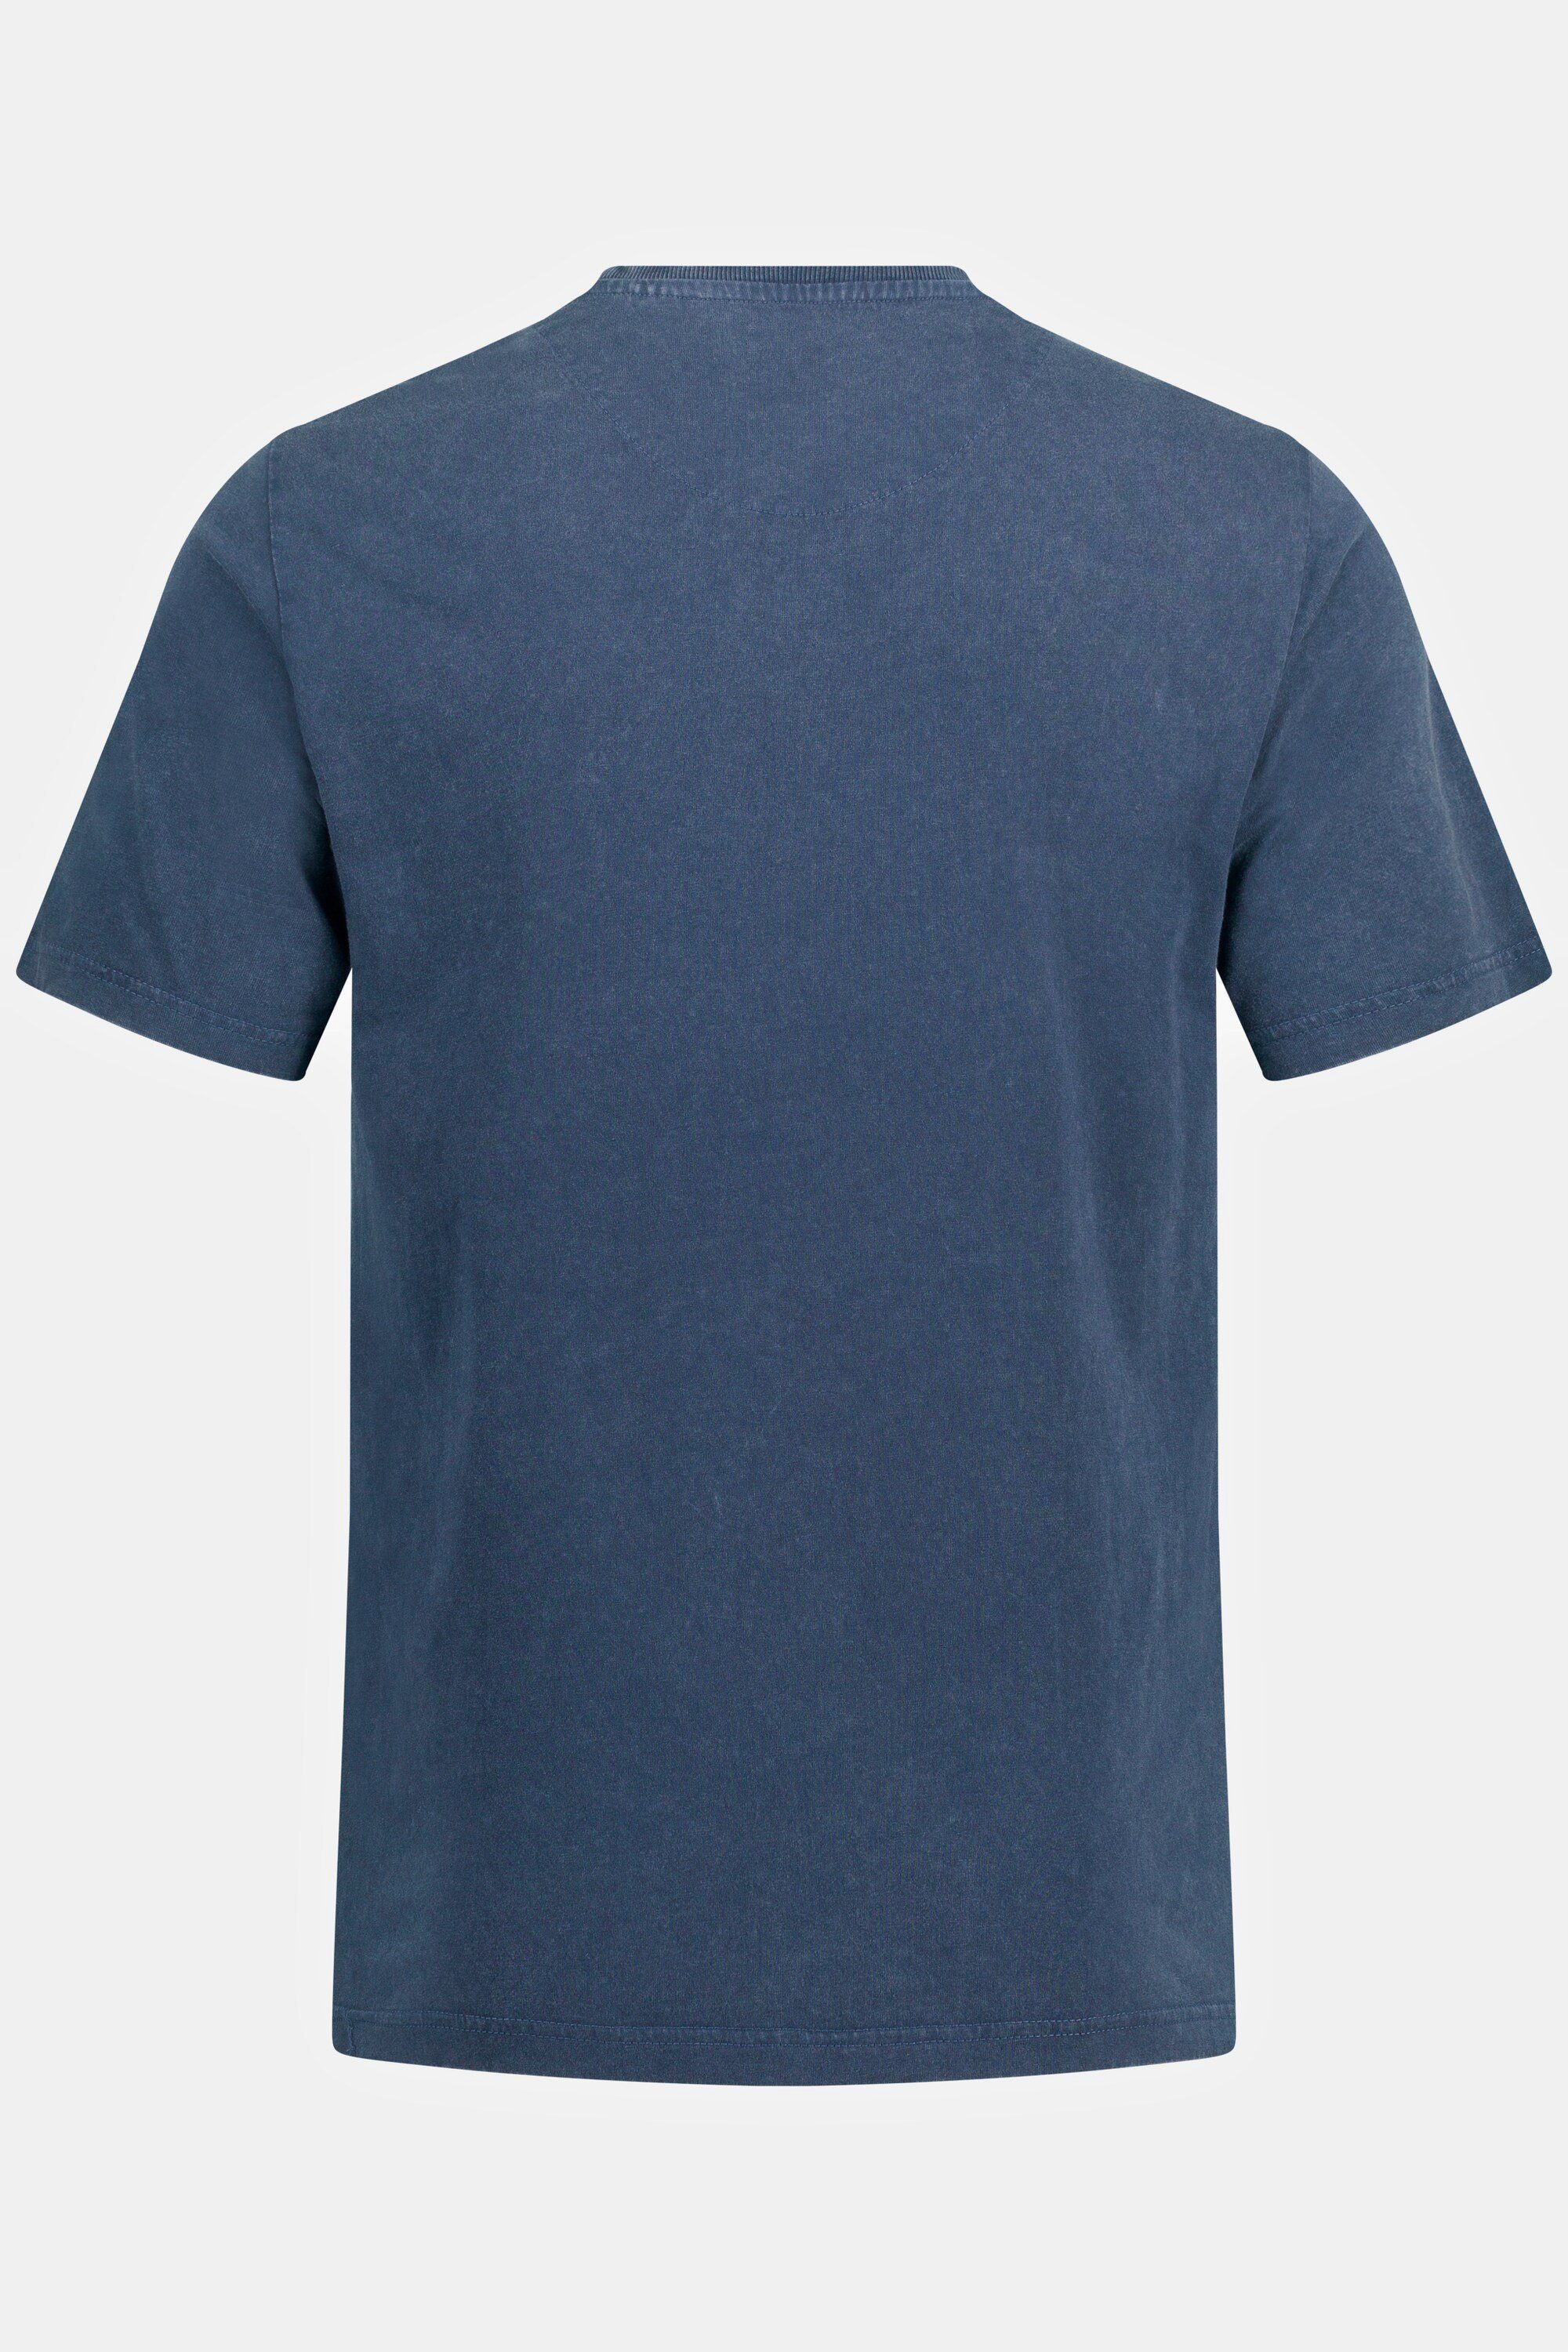 Halbarm Denim T-Shirt T-Shirt Rundhals Print JP1880